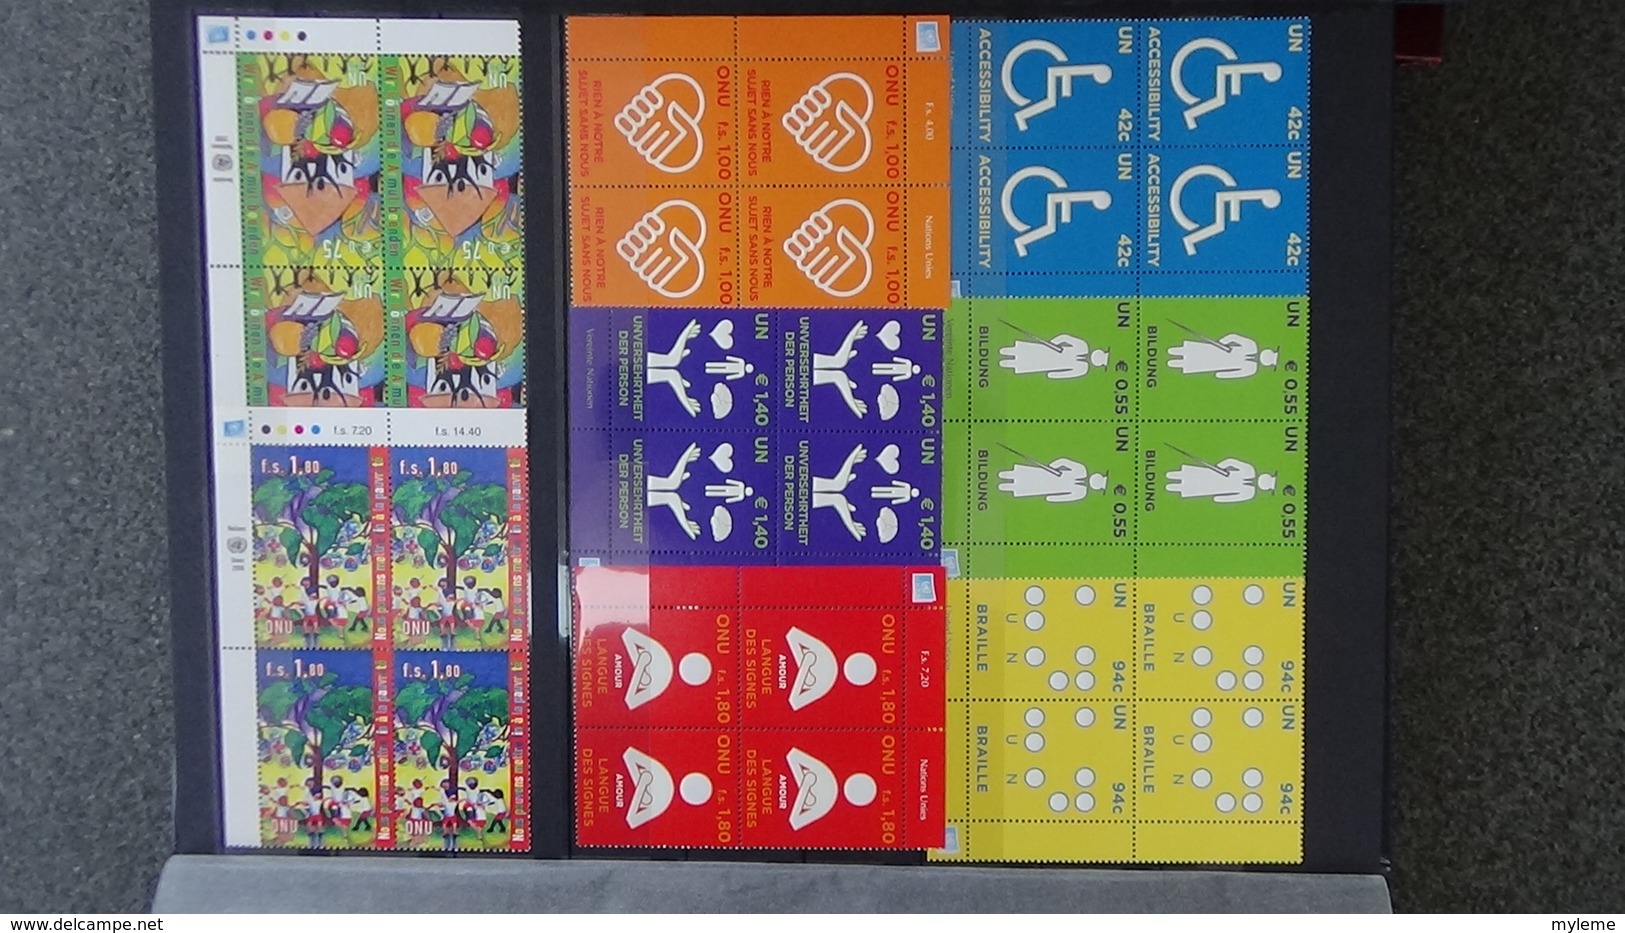 Dispersion d'une grosse collection timbres et blocs ** Nations Unies tous bureaux. Superbe !!!